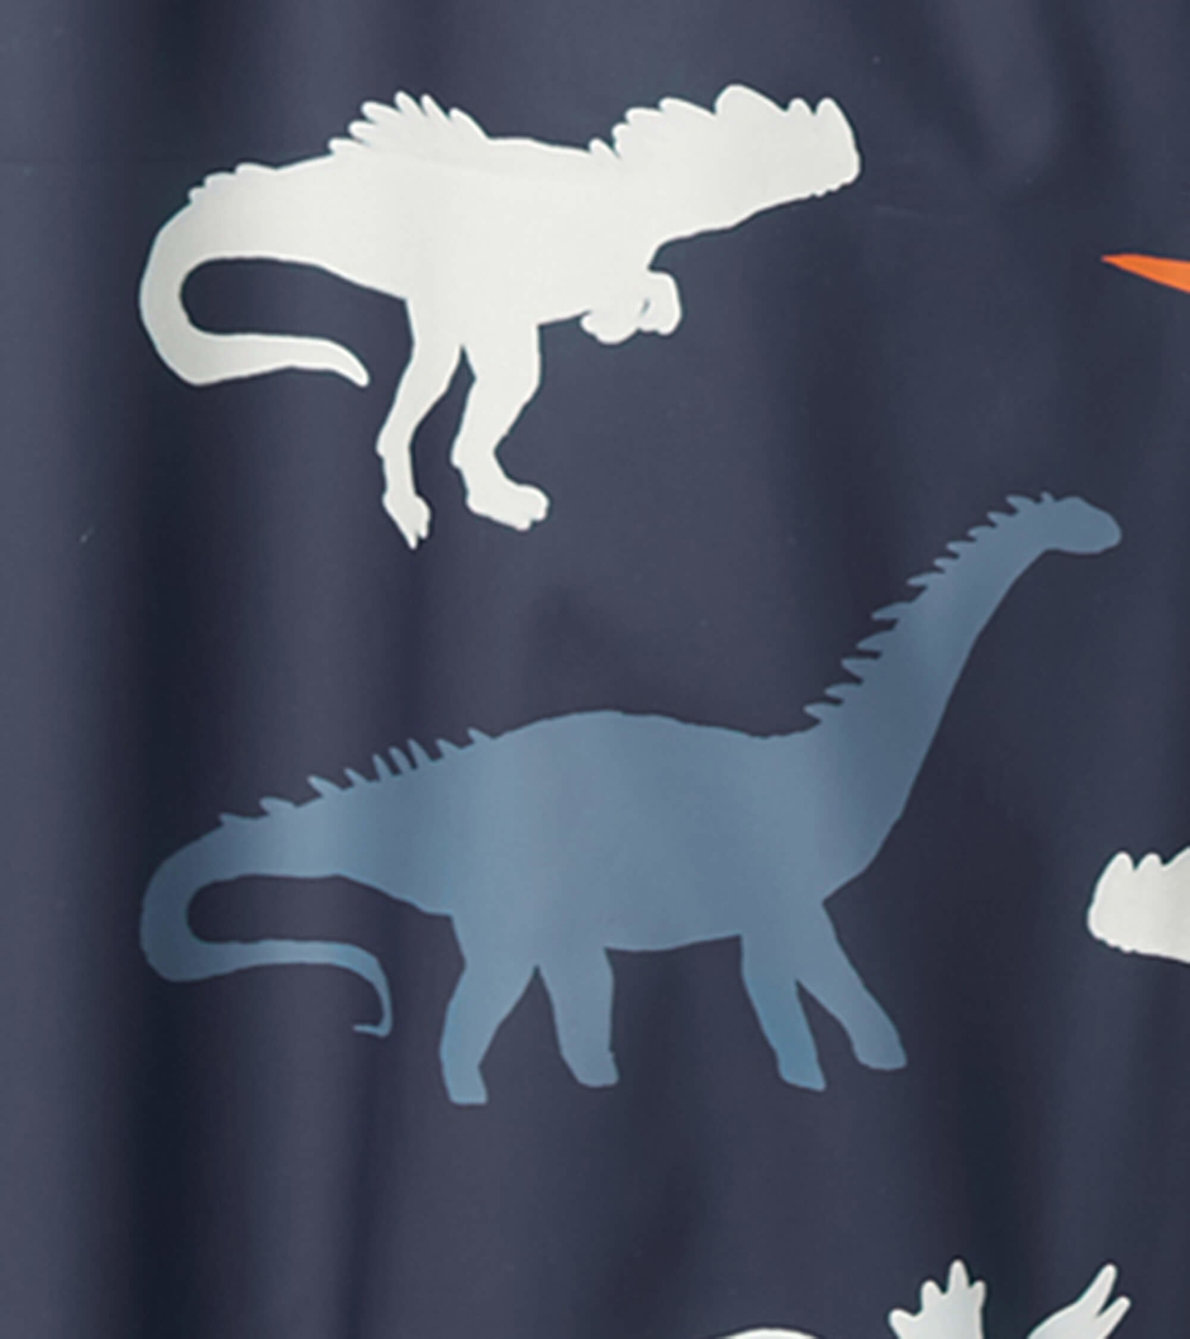 Agrandir l'image de Pantalon de pluie à couleur changeante pour enfant – Silhouettes de dinosaures